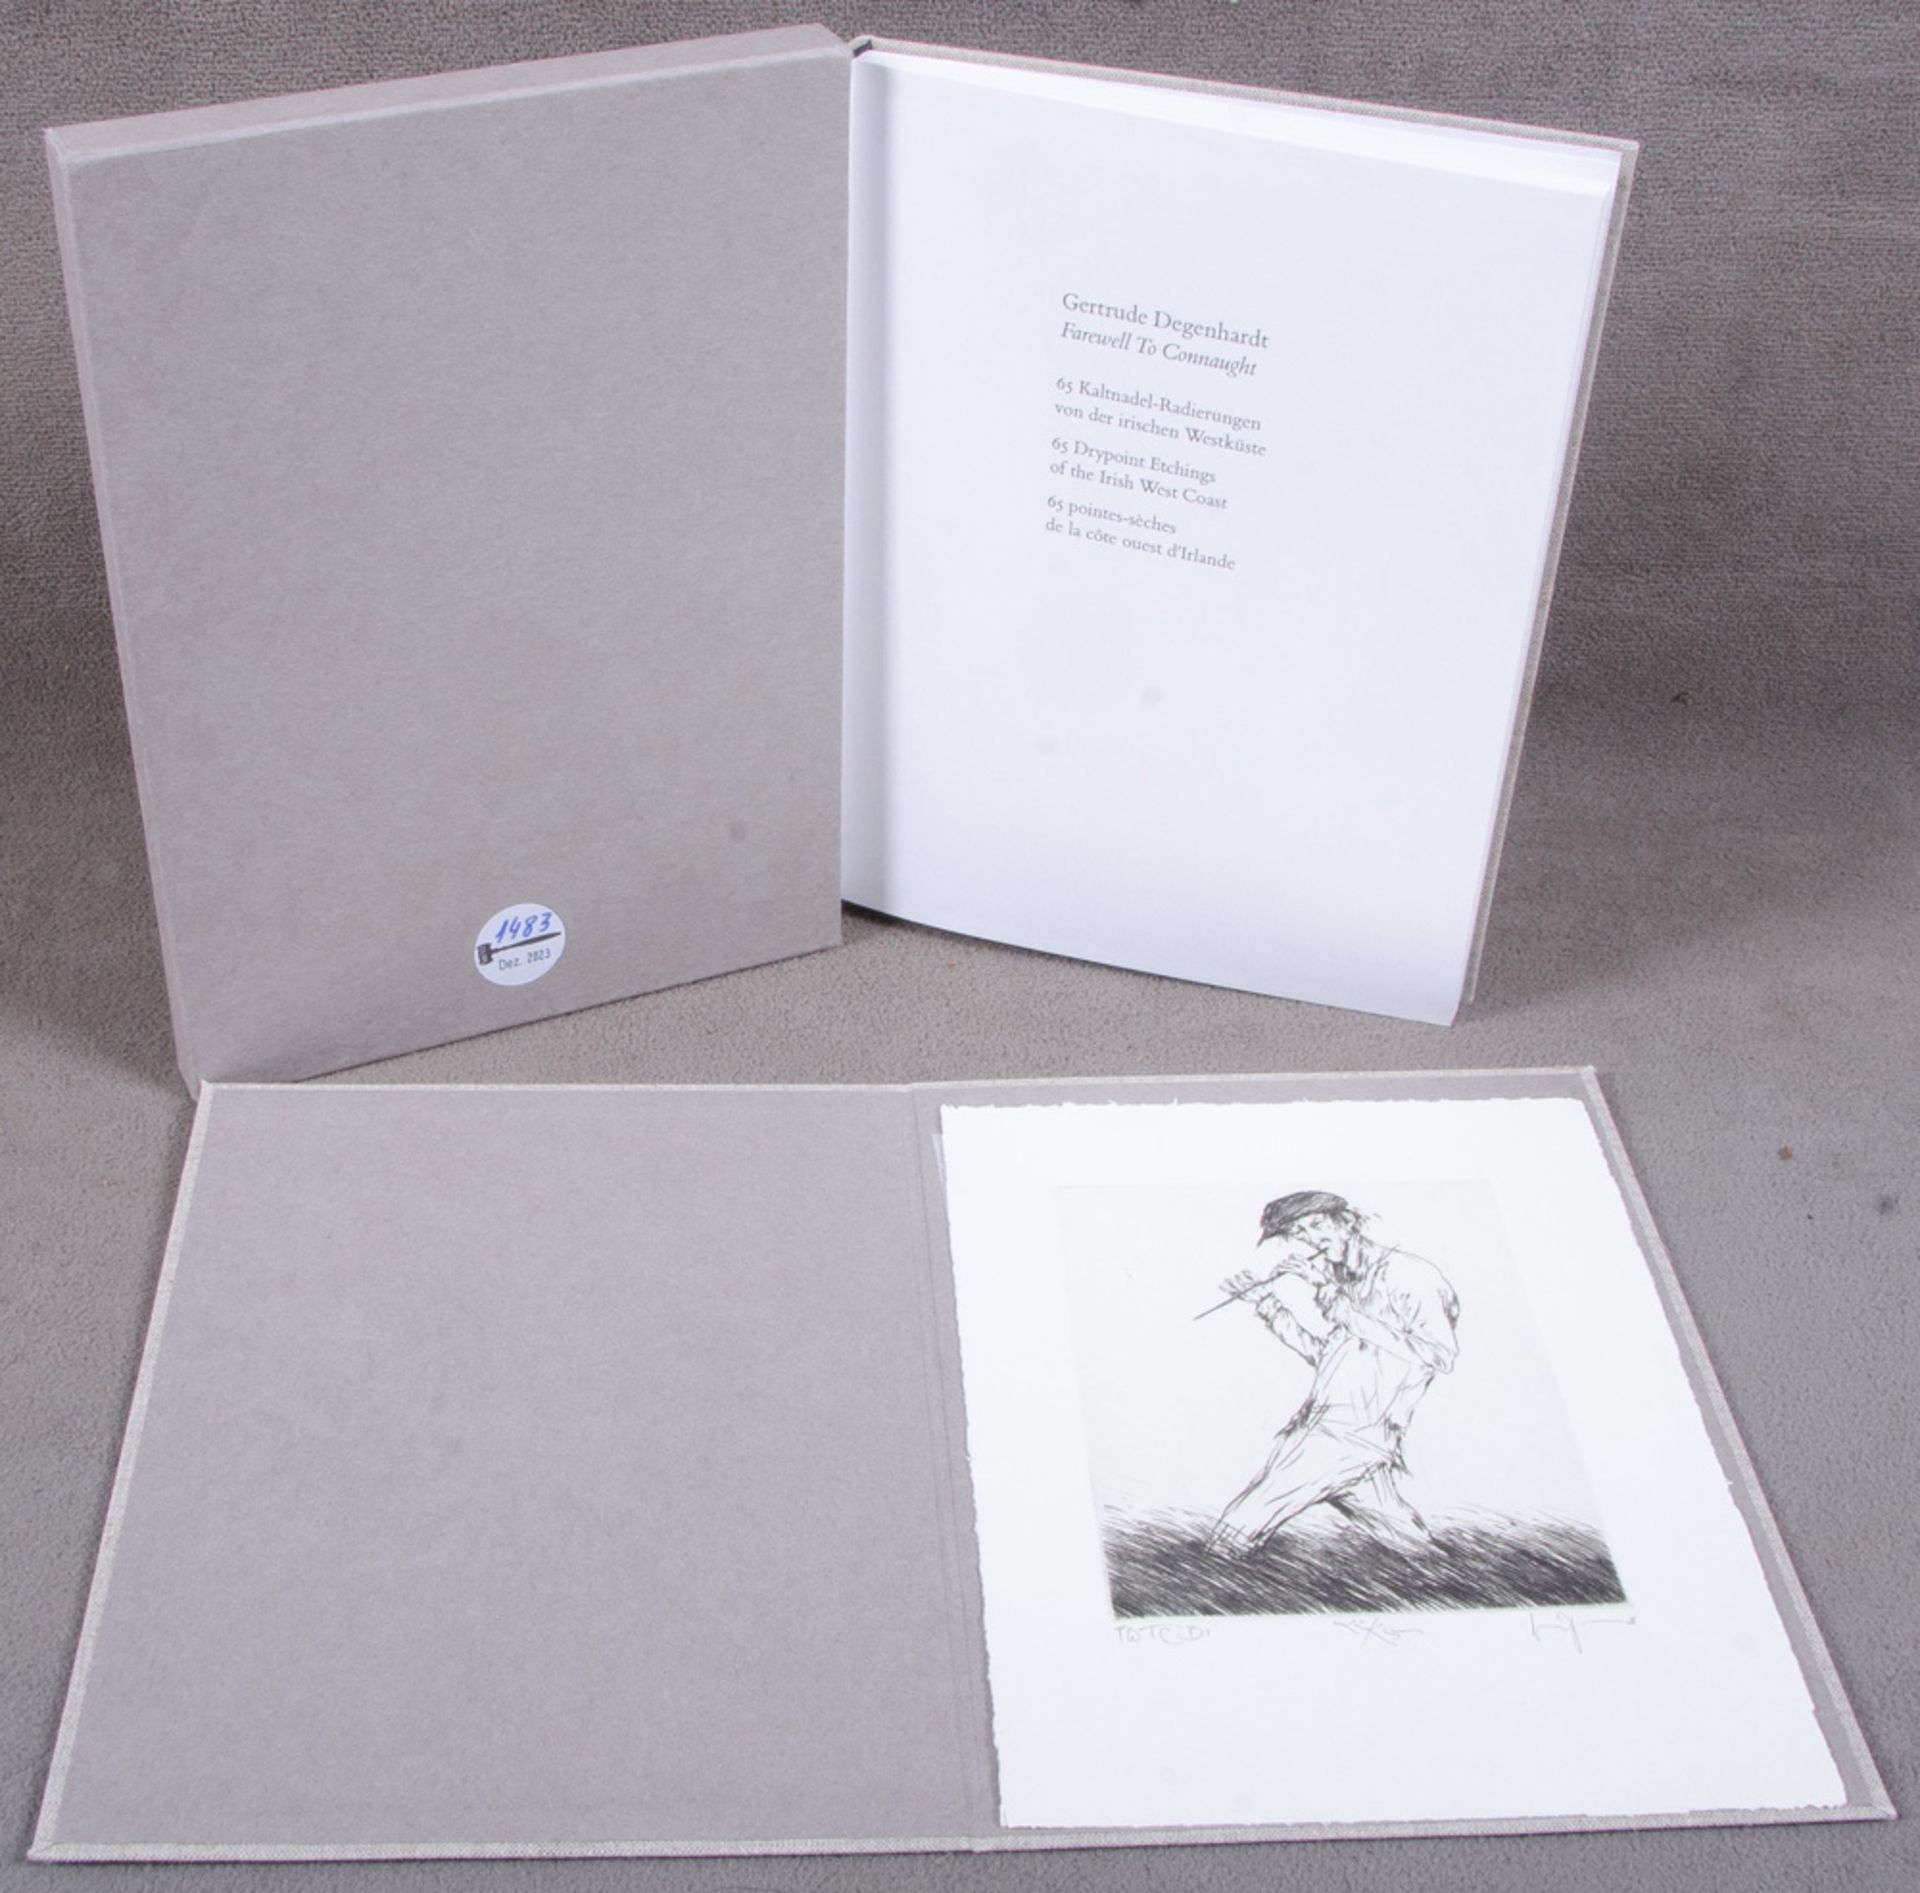 Gertrude Degenhardt (*1940). „Farewell to Connaught“ mit 65 lithographierten Kaltnadelradierungen